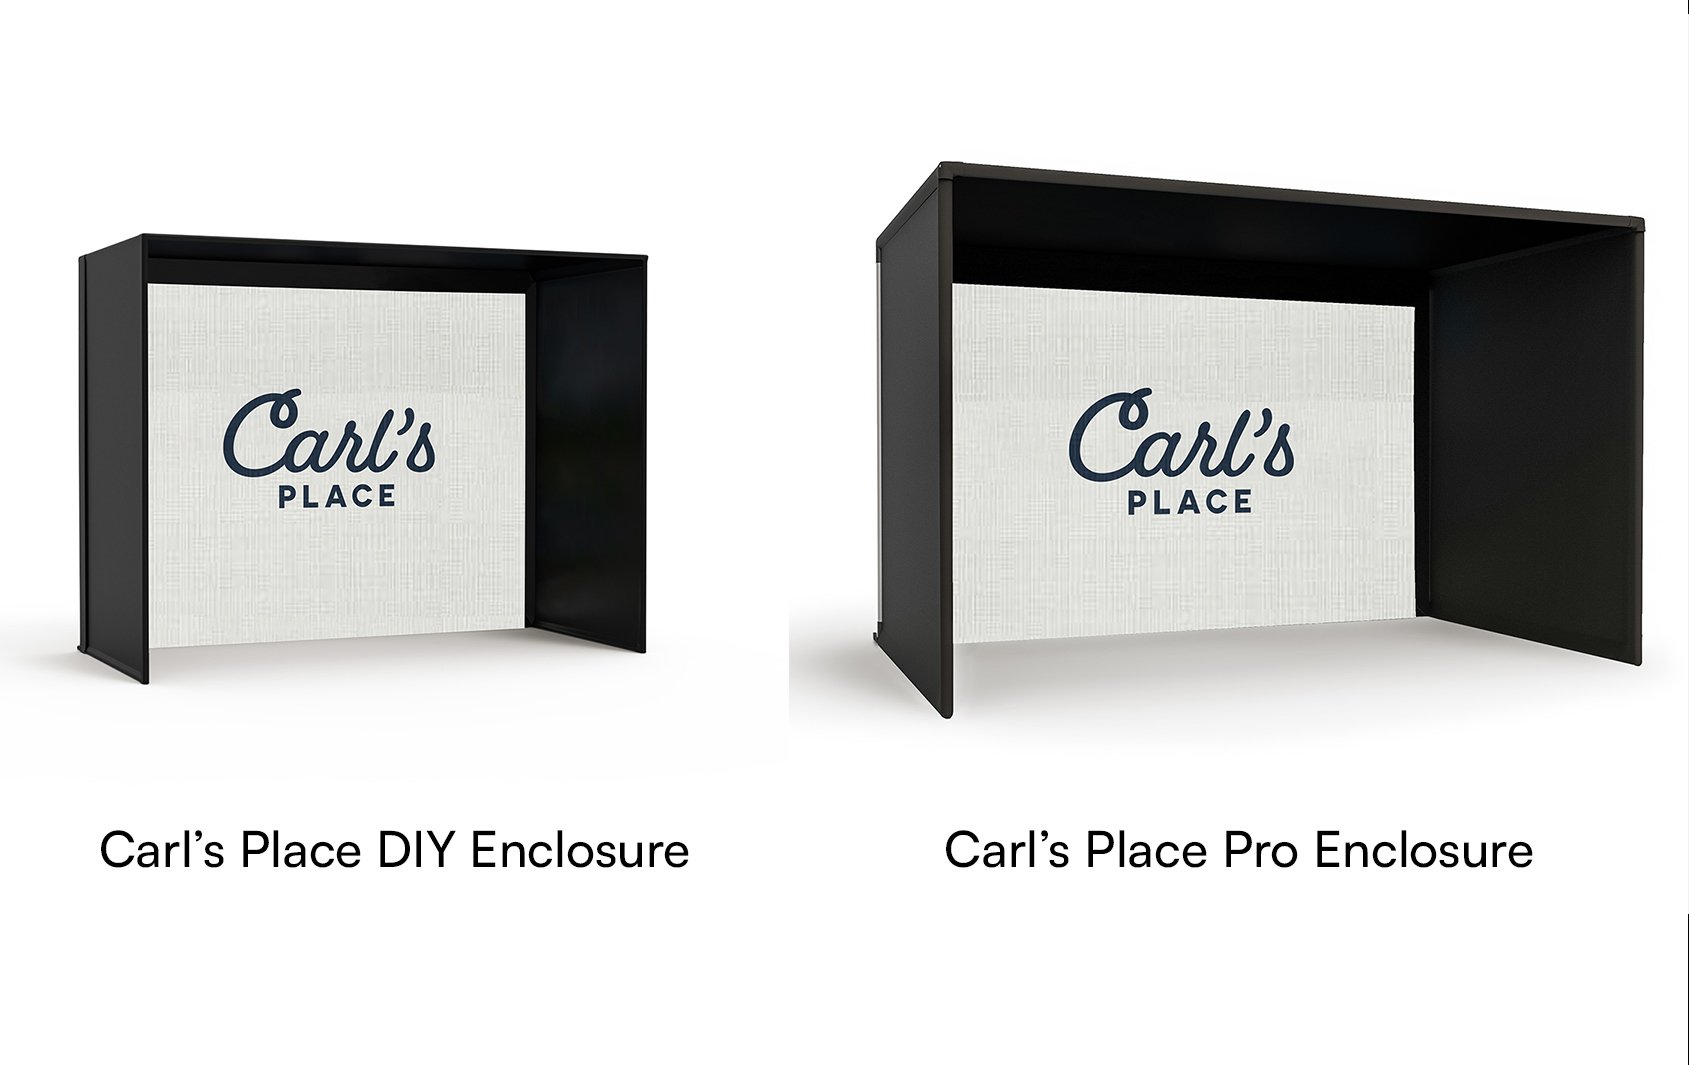 Carl's Place DIY and Pro Enclosure Size Comparison